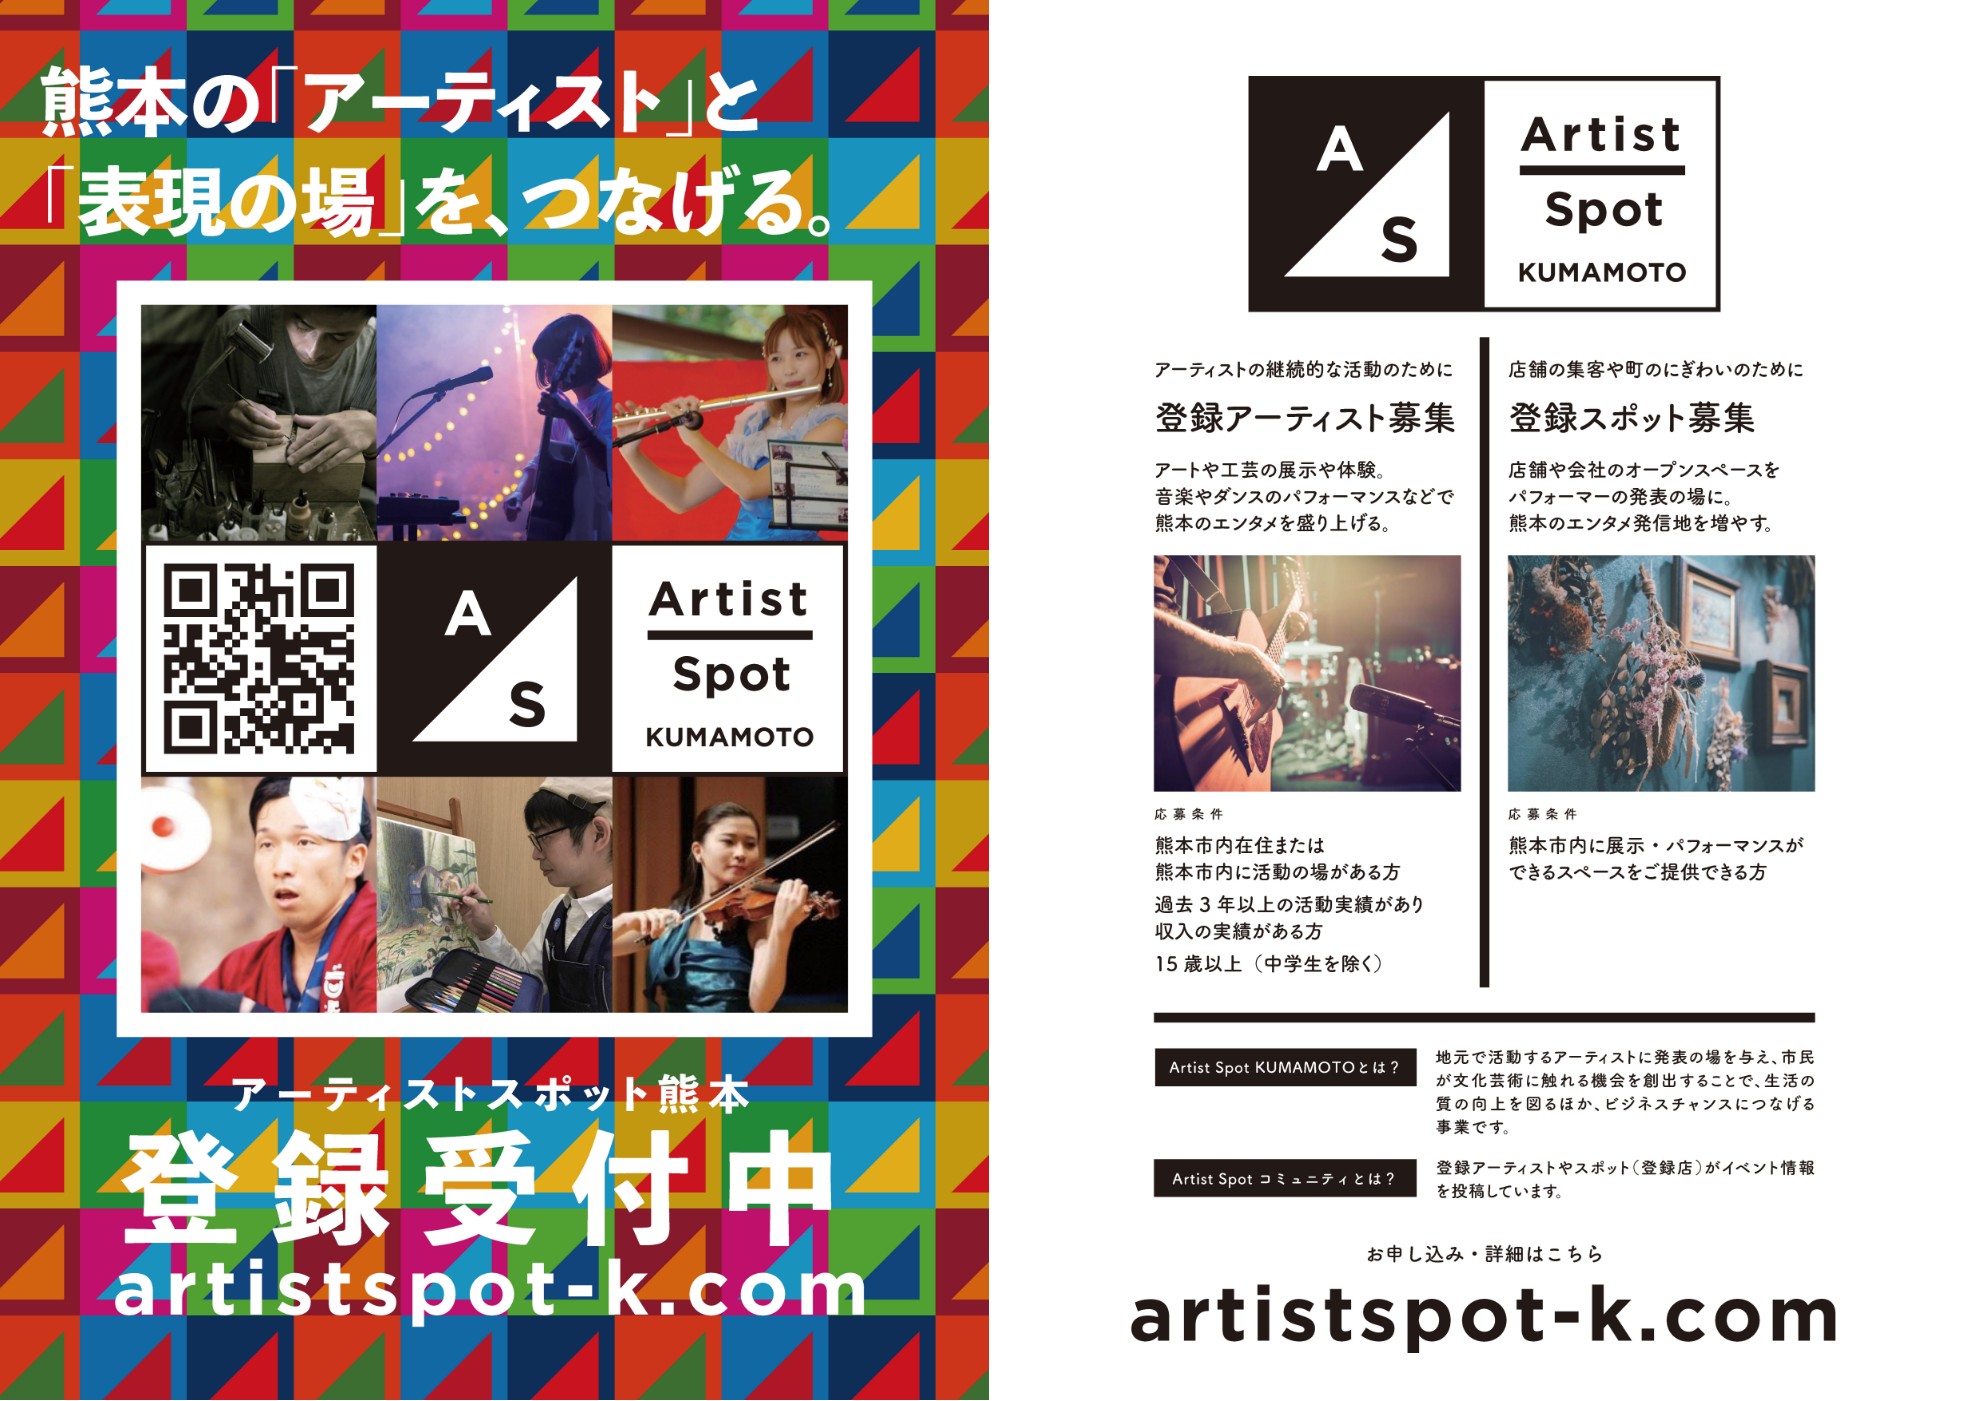 Picture：Artist Spots Kumamoto's pamphlet